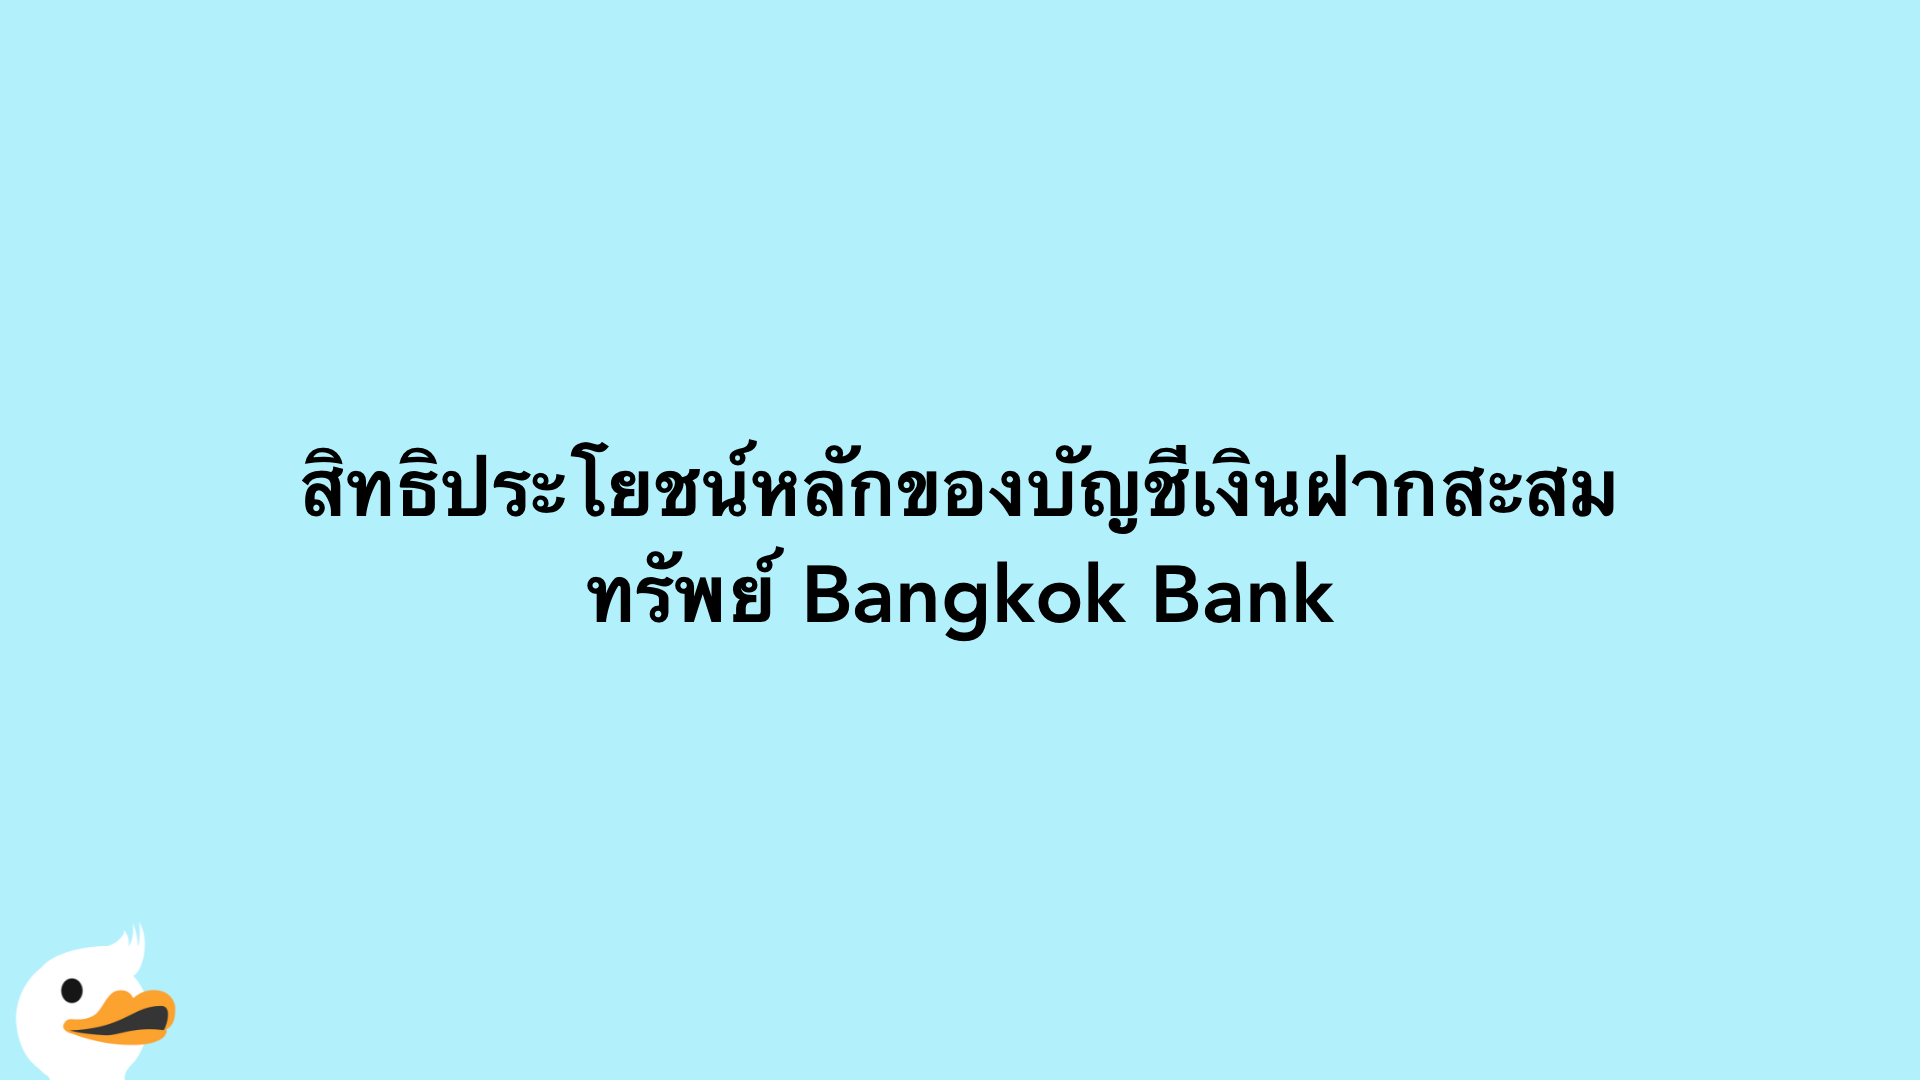 สิทธิประโยชน์หลักของบัญชีเงินฝากสะสมทรัพย์ Bangkok Bank